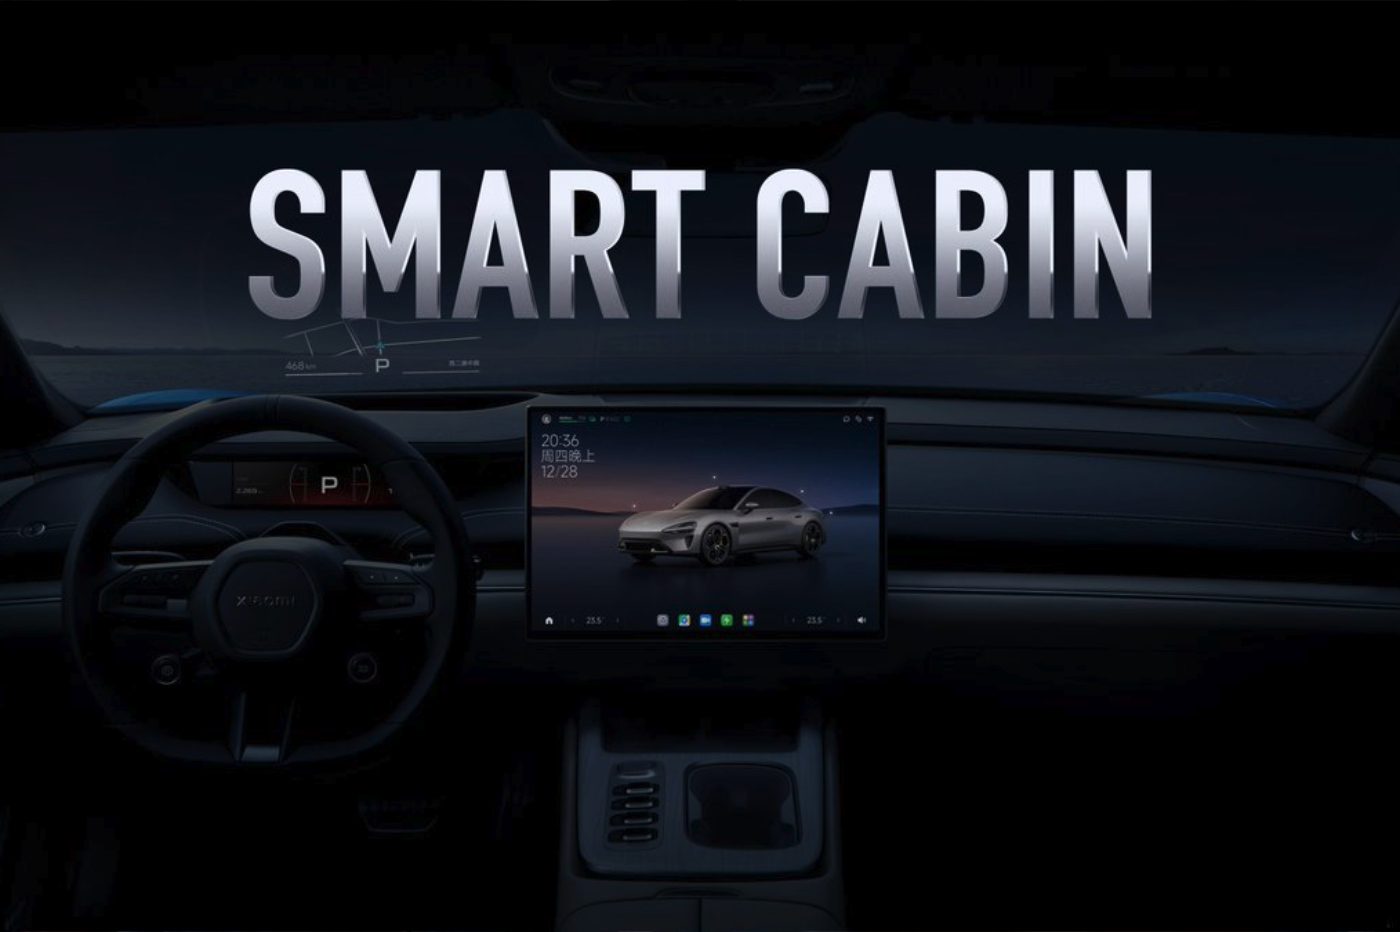 Xiaomi Su7 Sedan Electric Car Interior